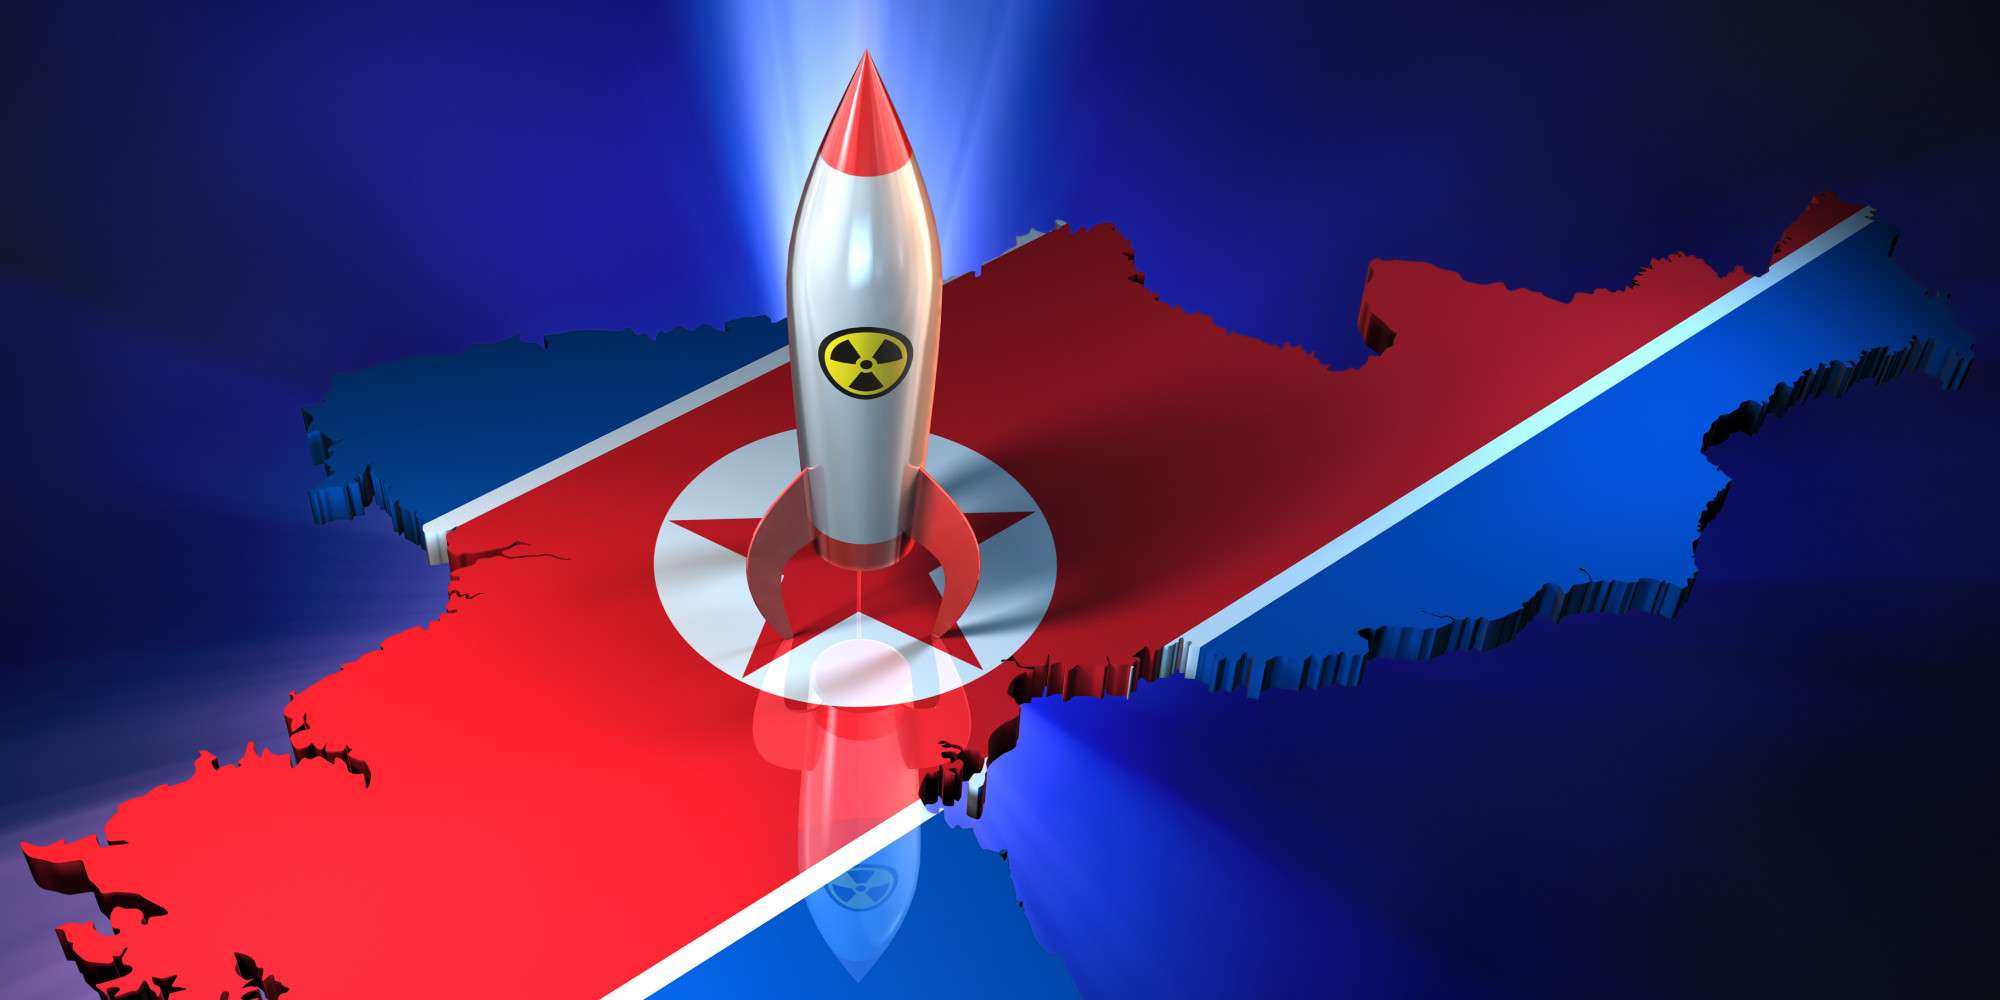 Η Βόρεια Κορέα εκτόξευσε πύραυλο! Πως αντιδρούν οι ΗΠΑ